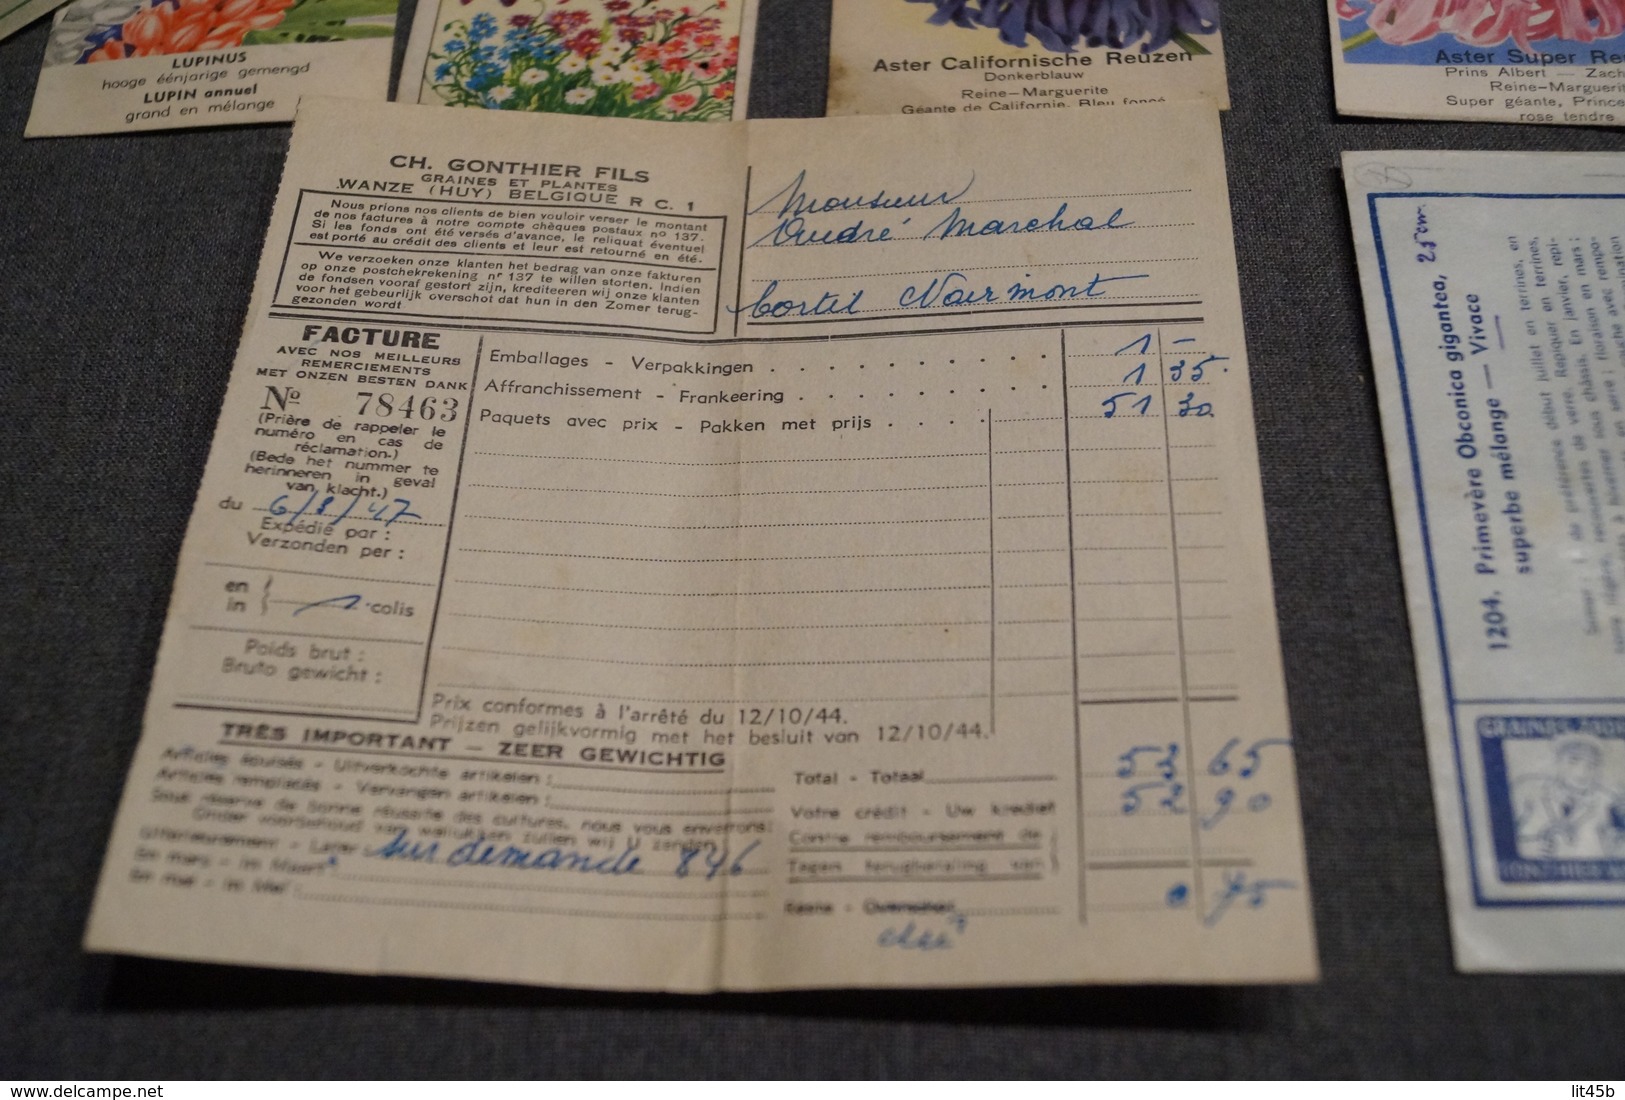 Très beau lot d'ancien paquets de semences (20),Fleurs,graines,Gonthier,etc...1947 avec facture d'époque,jardinage